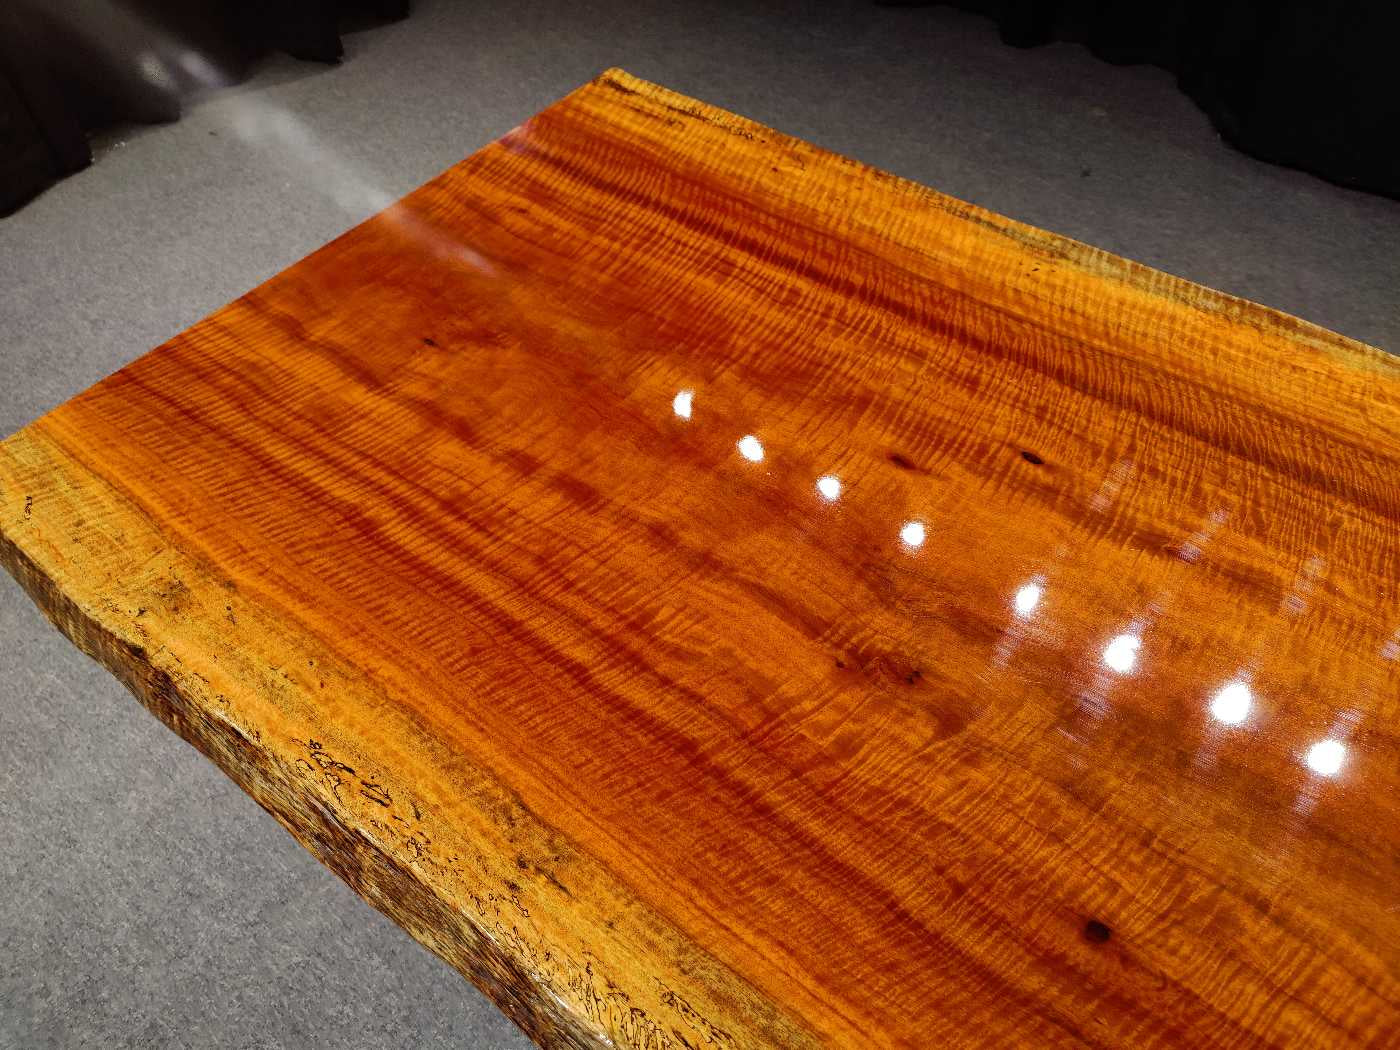 Losa de mesa de madera maciza de Zambia, <tc>Rhodesian Copal wood</tc> mesa de losa de borde vivo